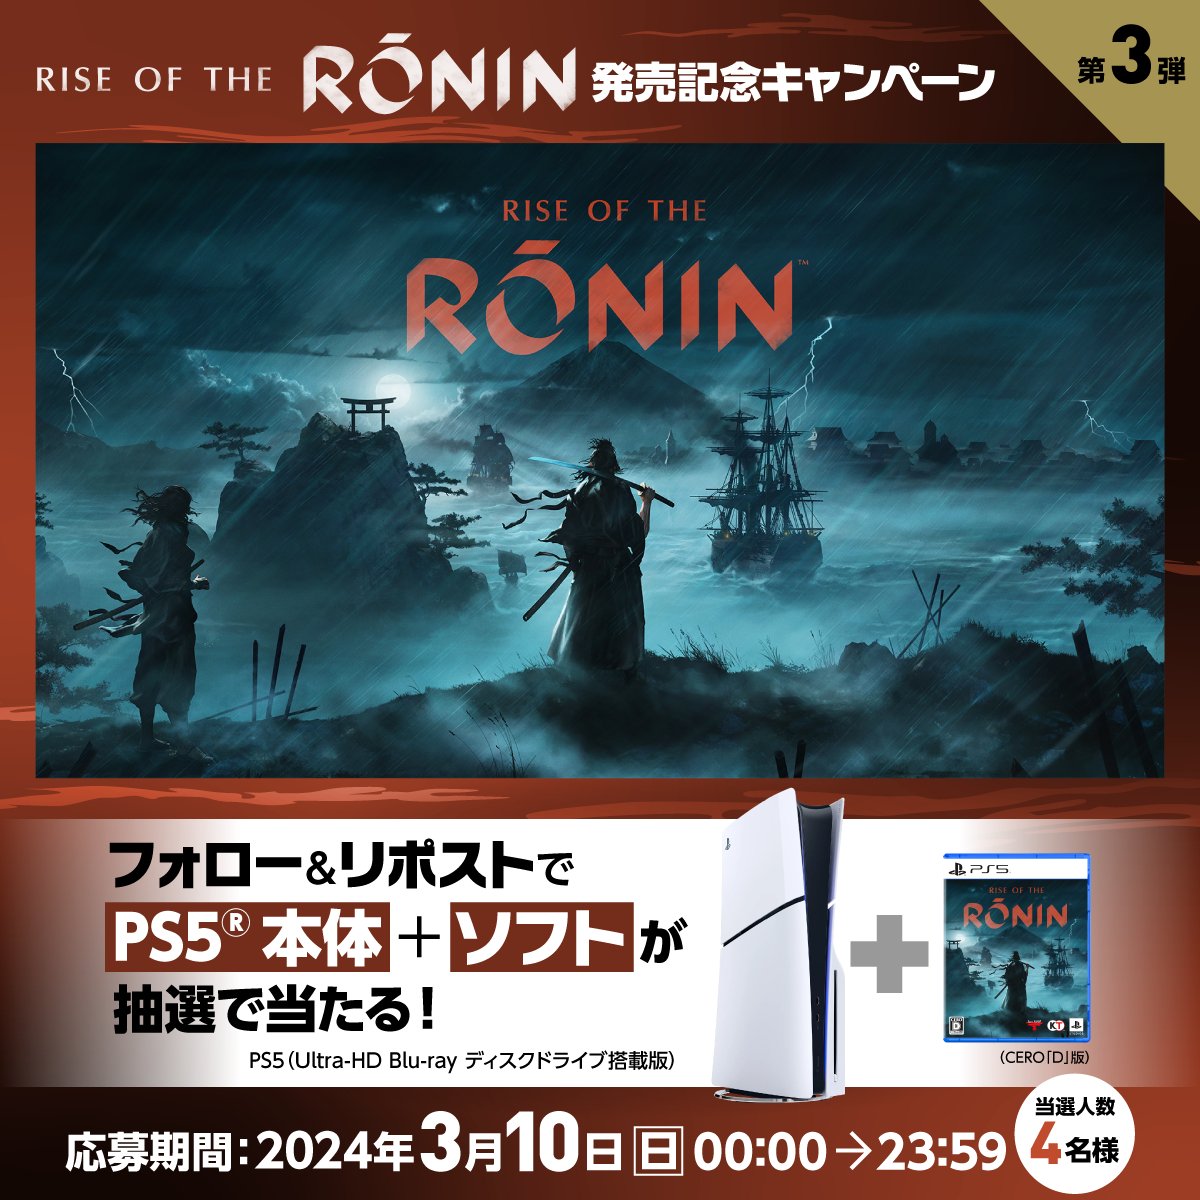 ◤3日間開催◢ #RiseoftheRonin発売記念キャンペーン ⚔第三弾 3月22日（金）発売🏯 幕末を舞台にしたPS5®用オープンワールドアクションRPG『Rise of the Ronin』 PS5とセットで4名様にプレゼント🎁 フォロー&リポストで応募🙌 当選者に後日DMでご連絡します。 今回がラストチャンスです✨